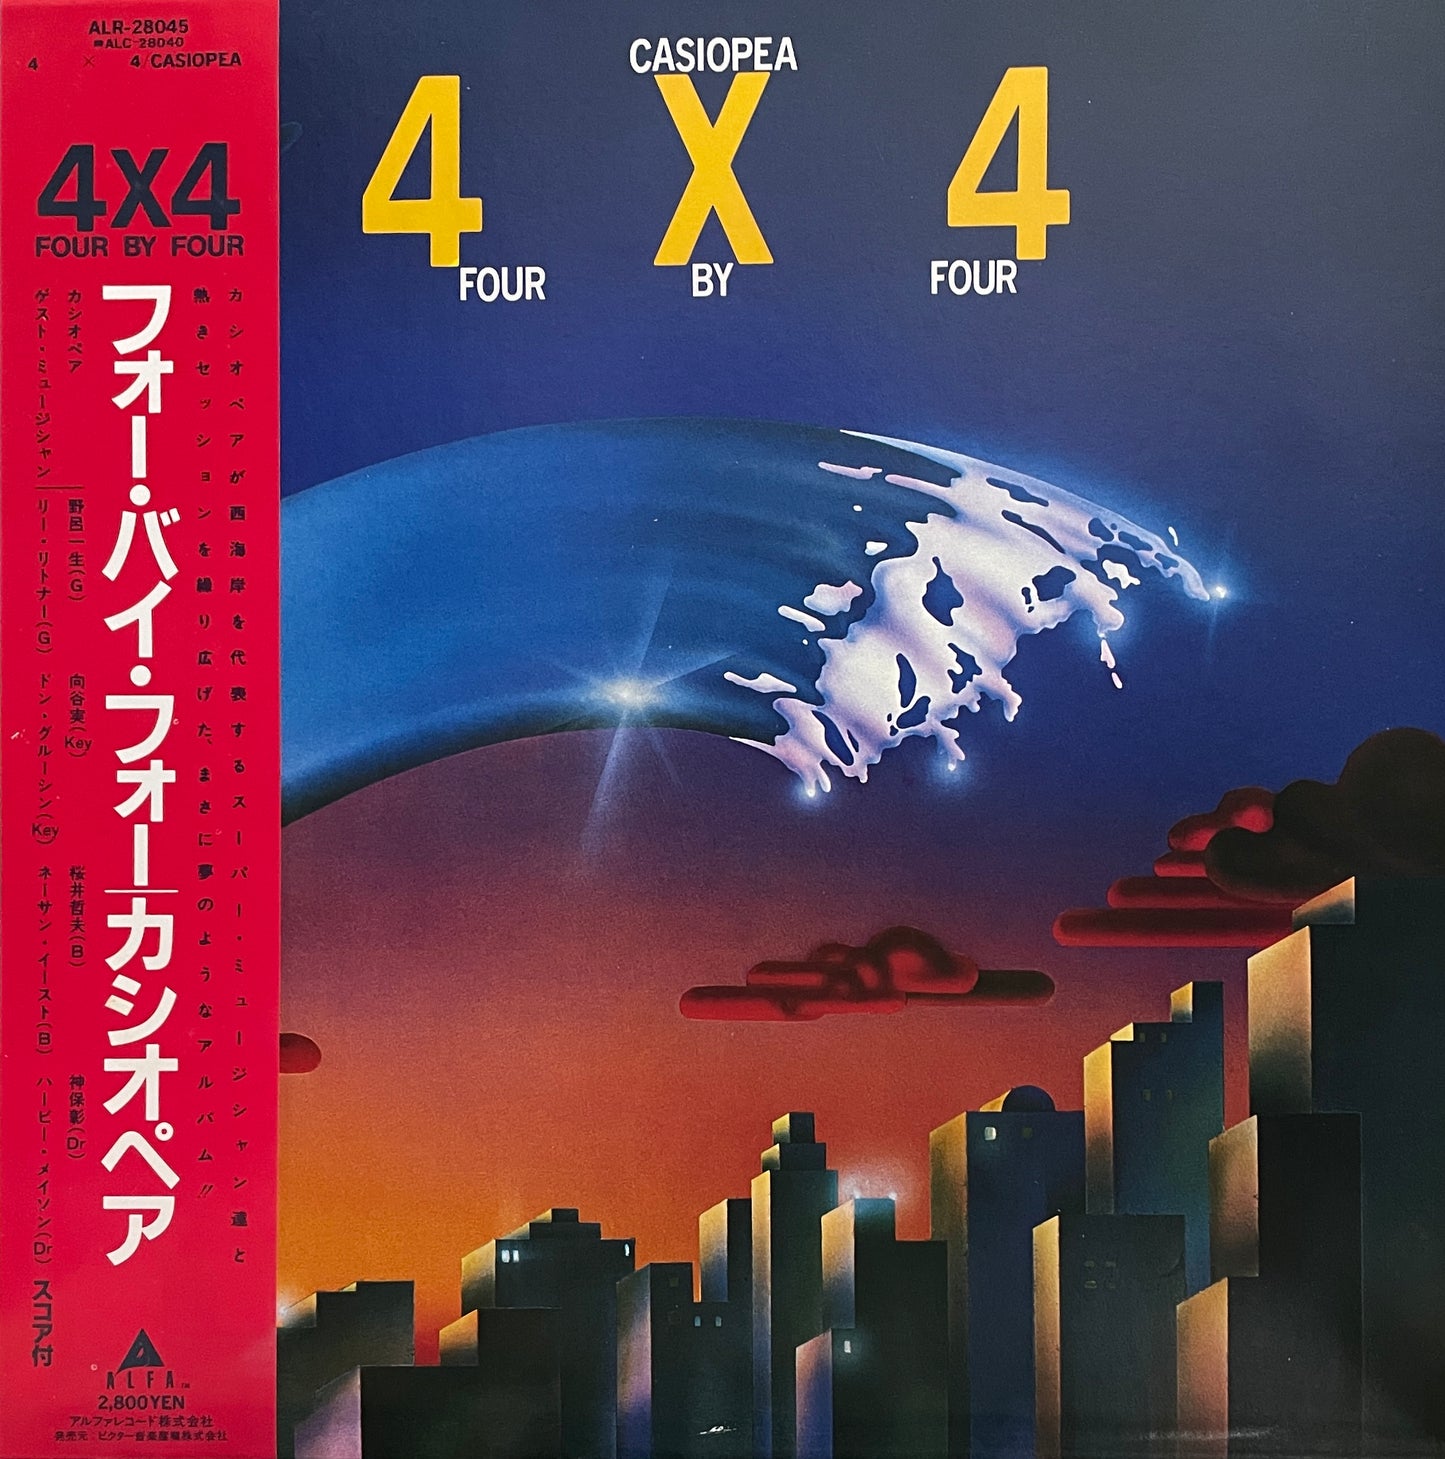 Casiopea "4x4" (1982)